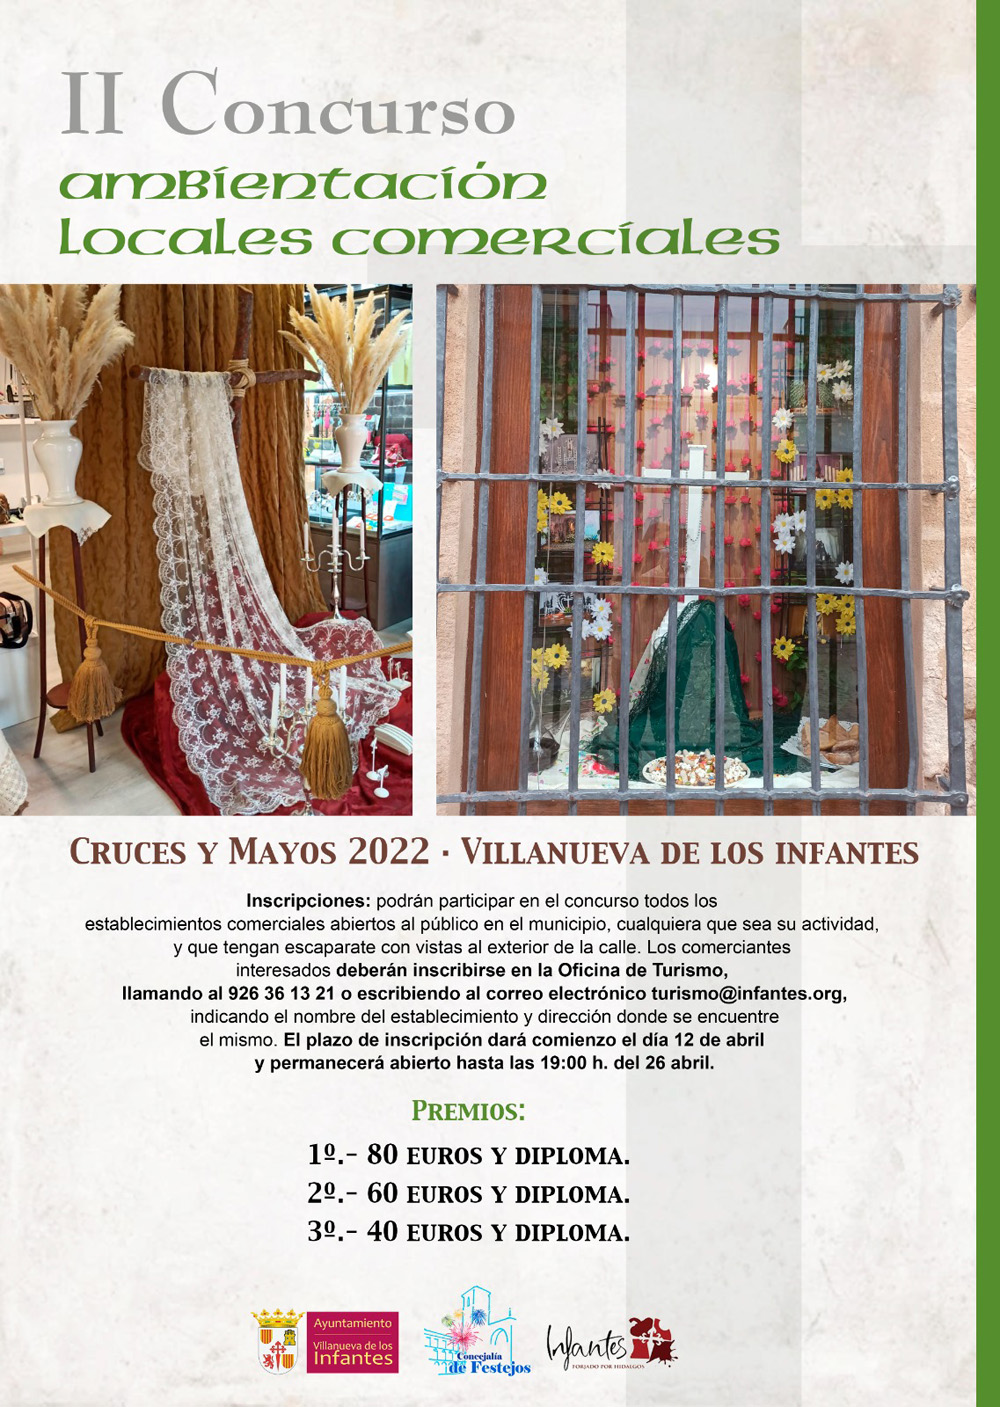 II Concurso de Ambientación de locales comerciales , Villanueva de los Infantes 2022